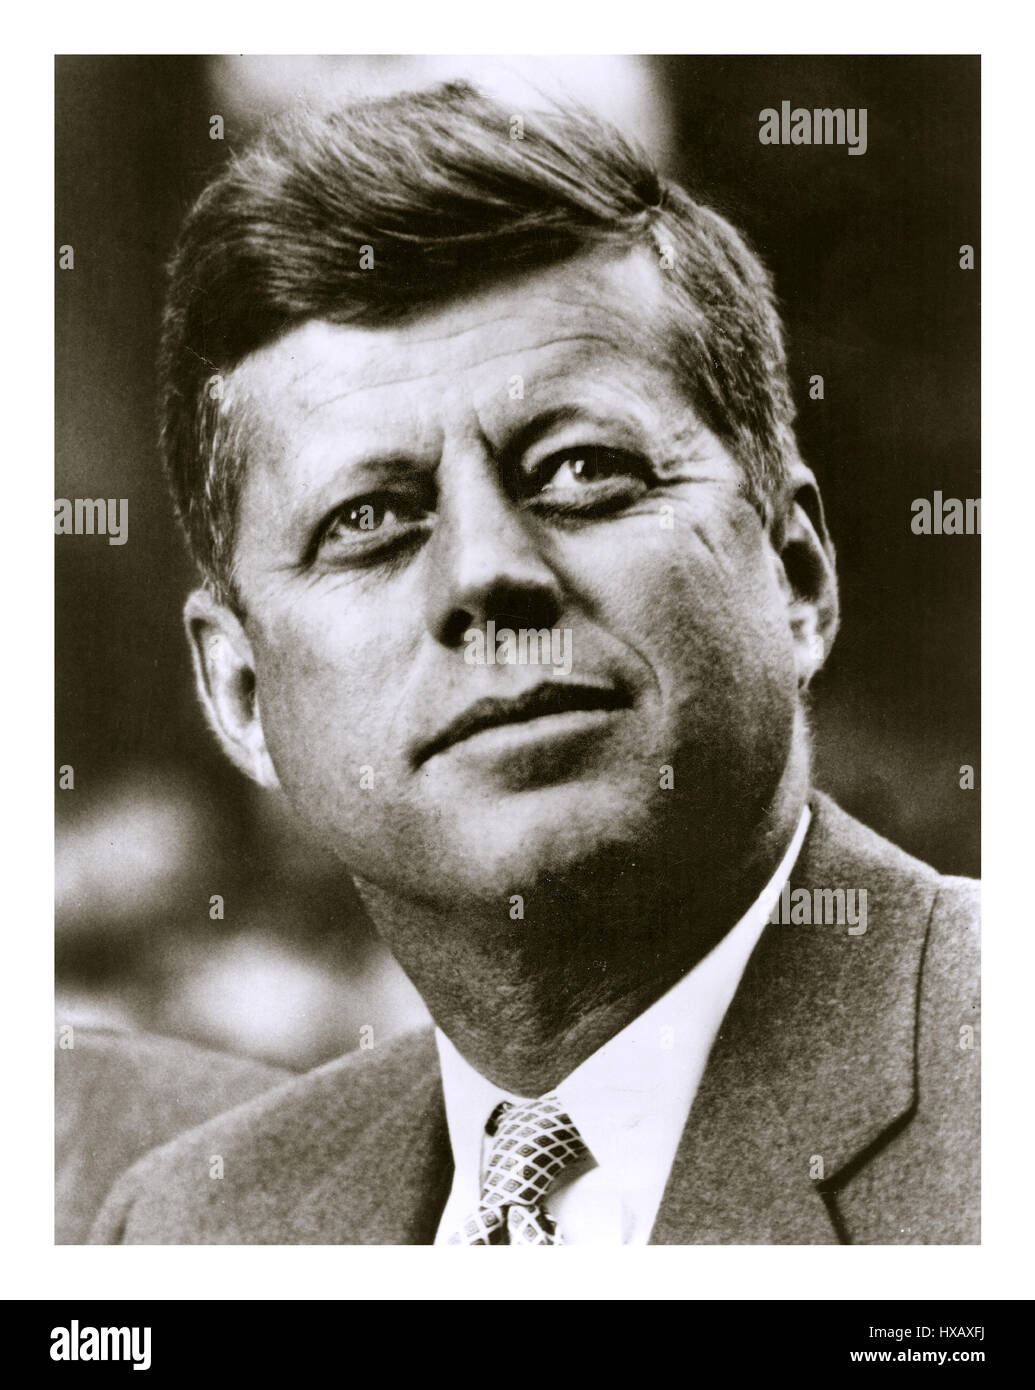 Präsident John F. Kennedy Sept 1961 informellen Kopf und Schulter b&w Portrait außen im Freien. Stockfoto